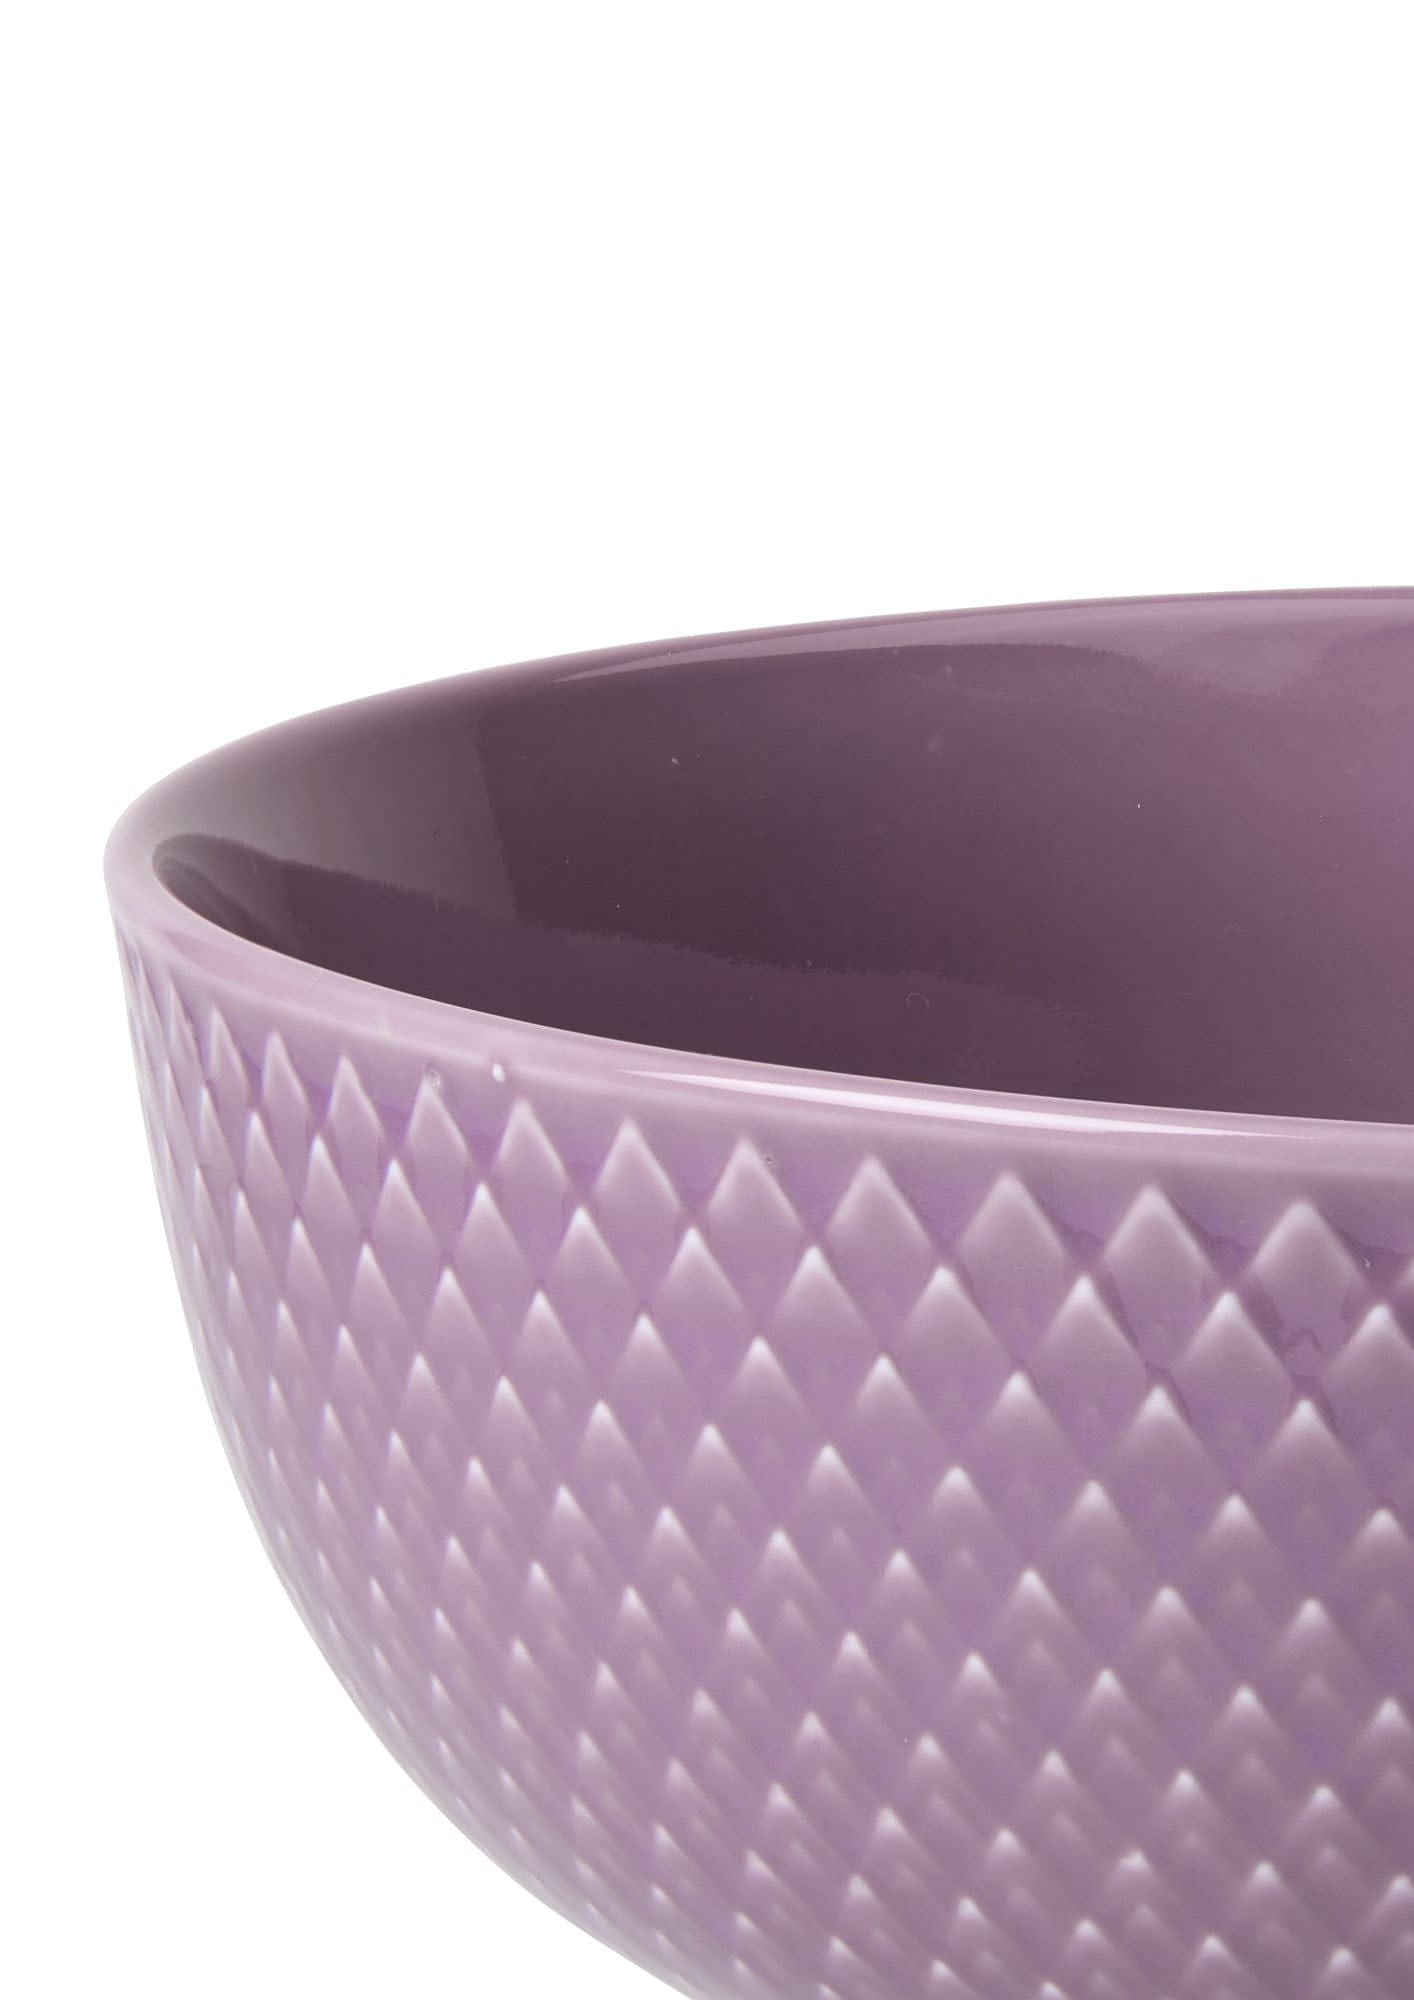 Lyngby Porcelæn Rhombe Color Bowl Ø15,5 cm, violet